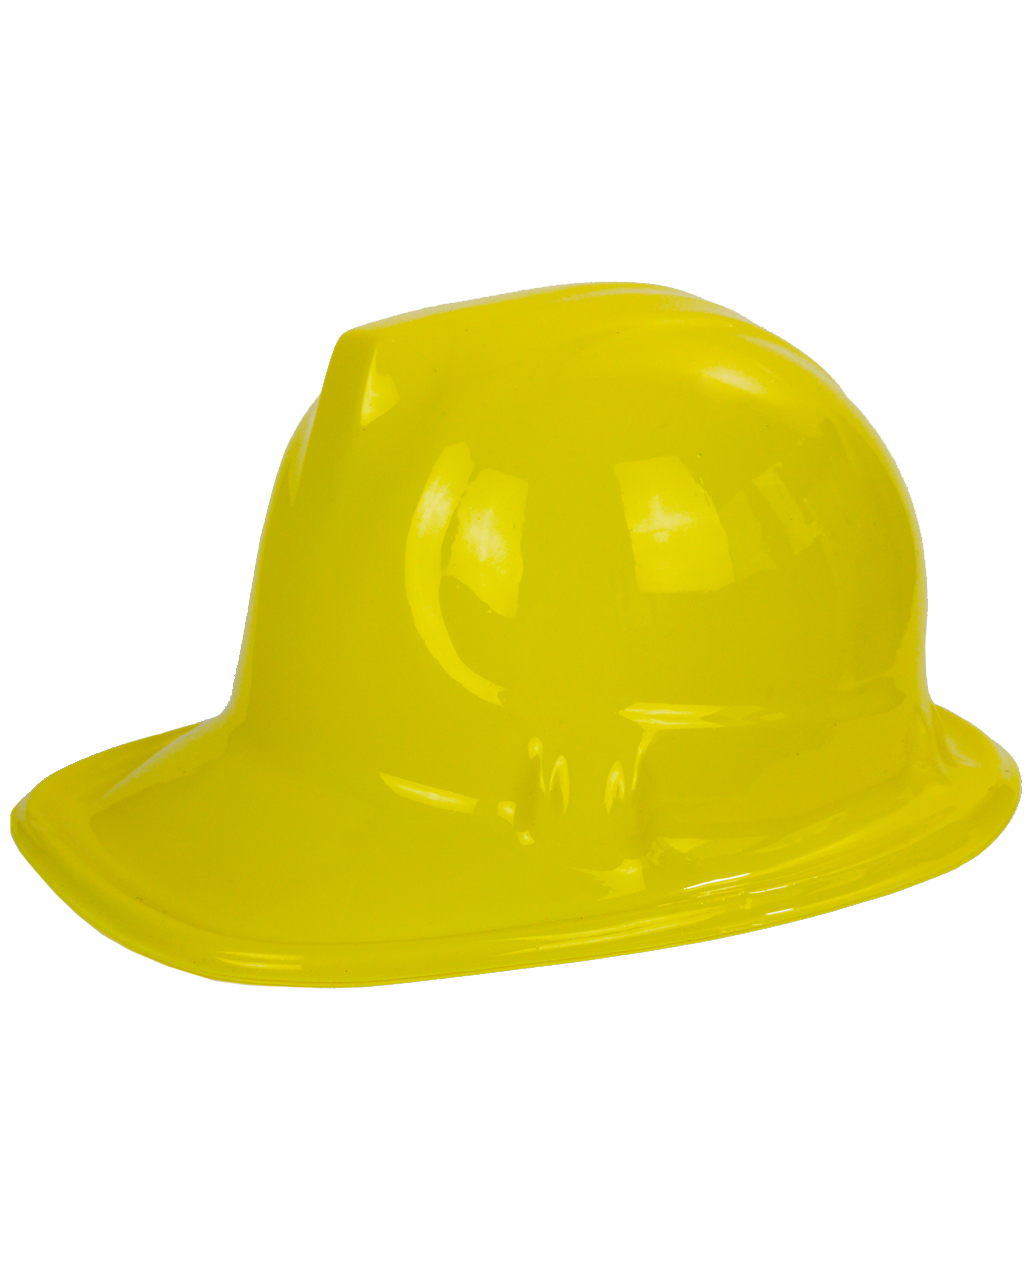 Bauarbeiterhelm gelb als Kostümzubehör